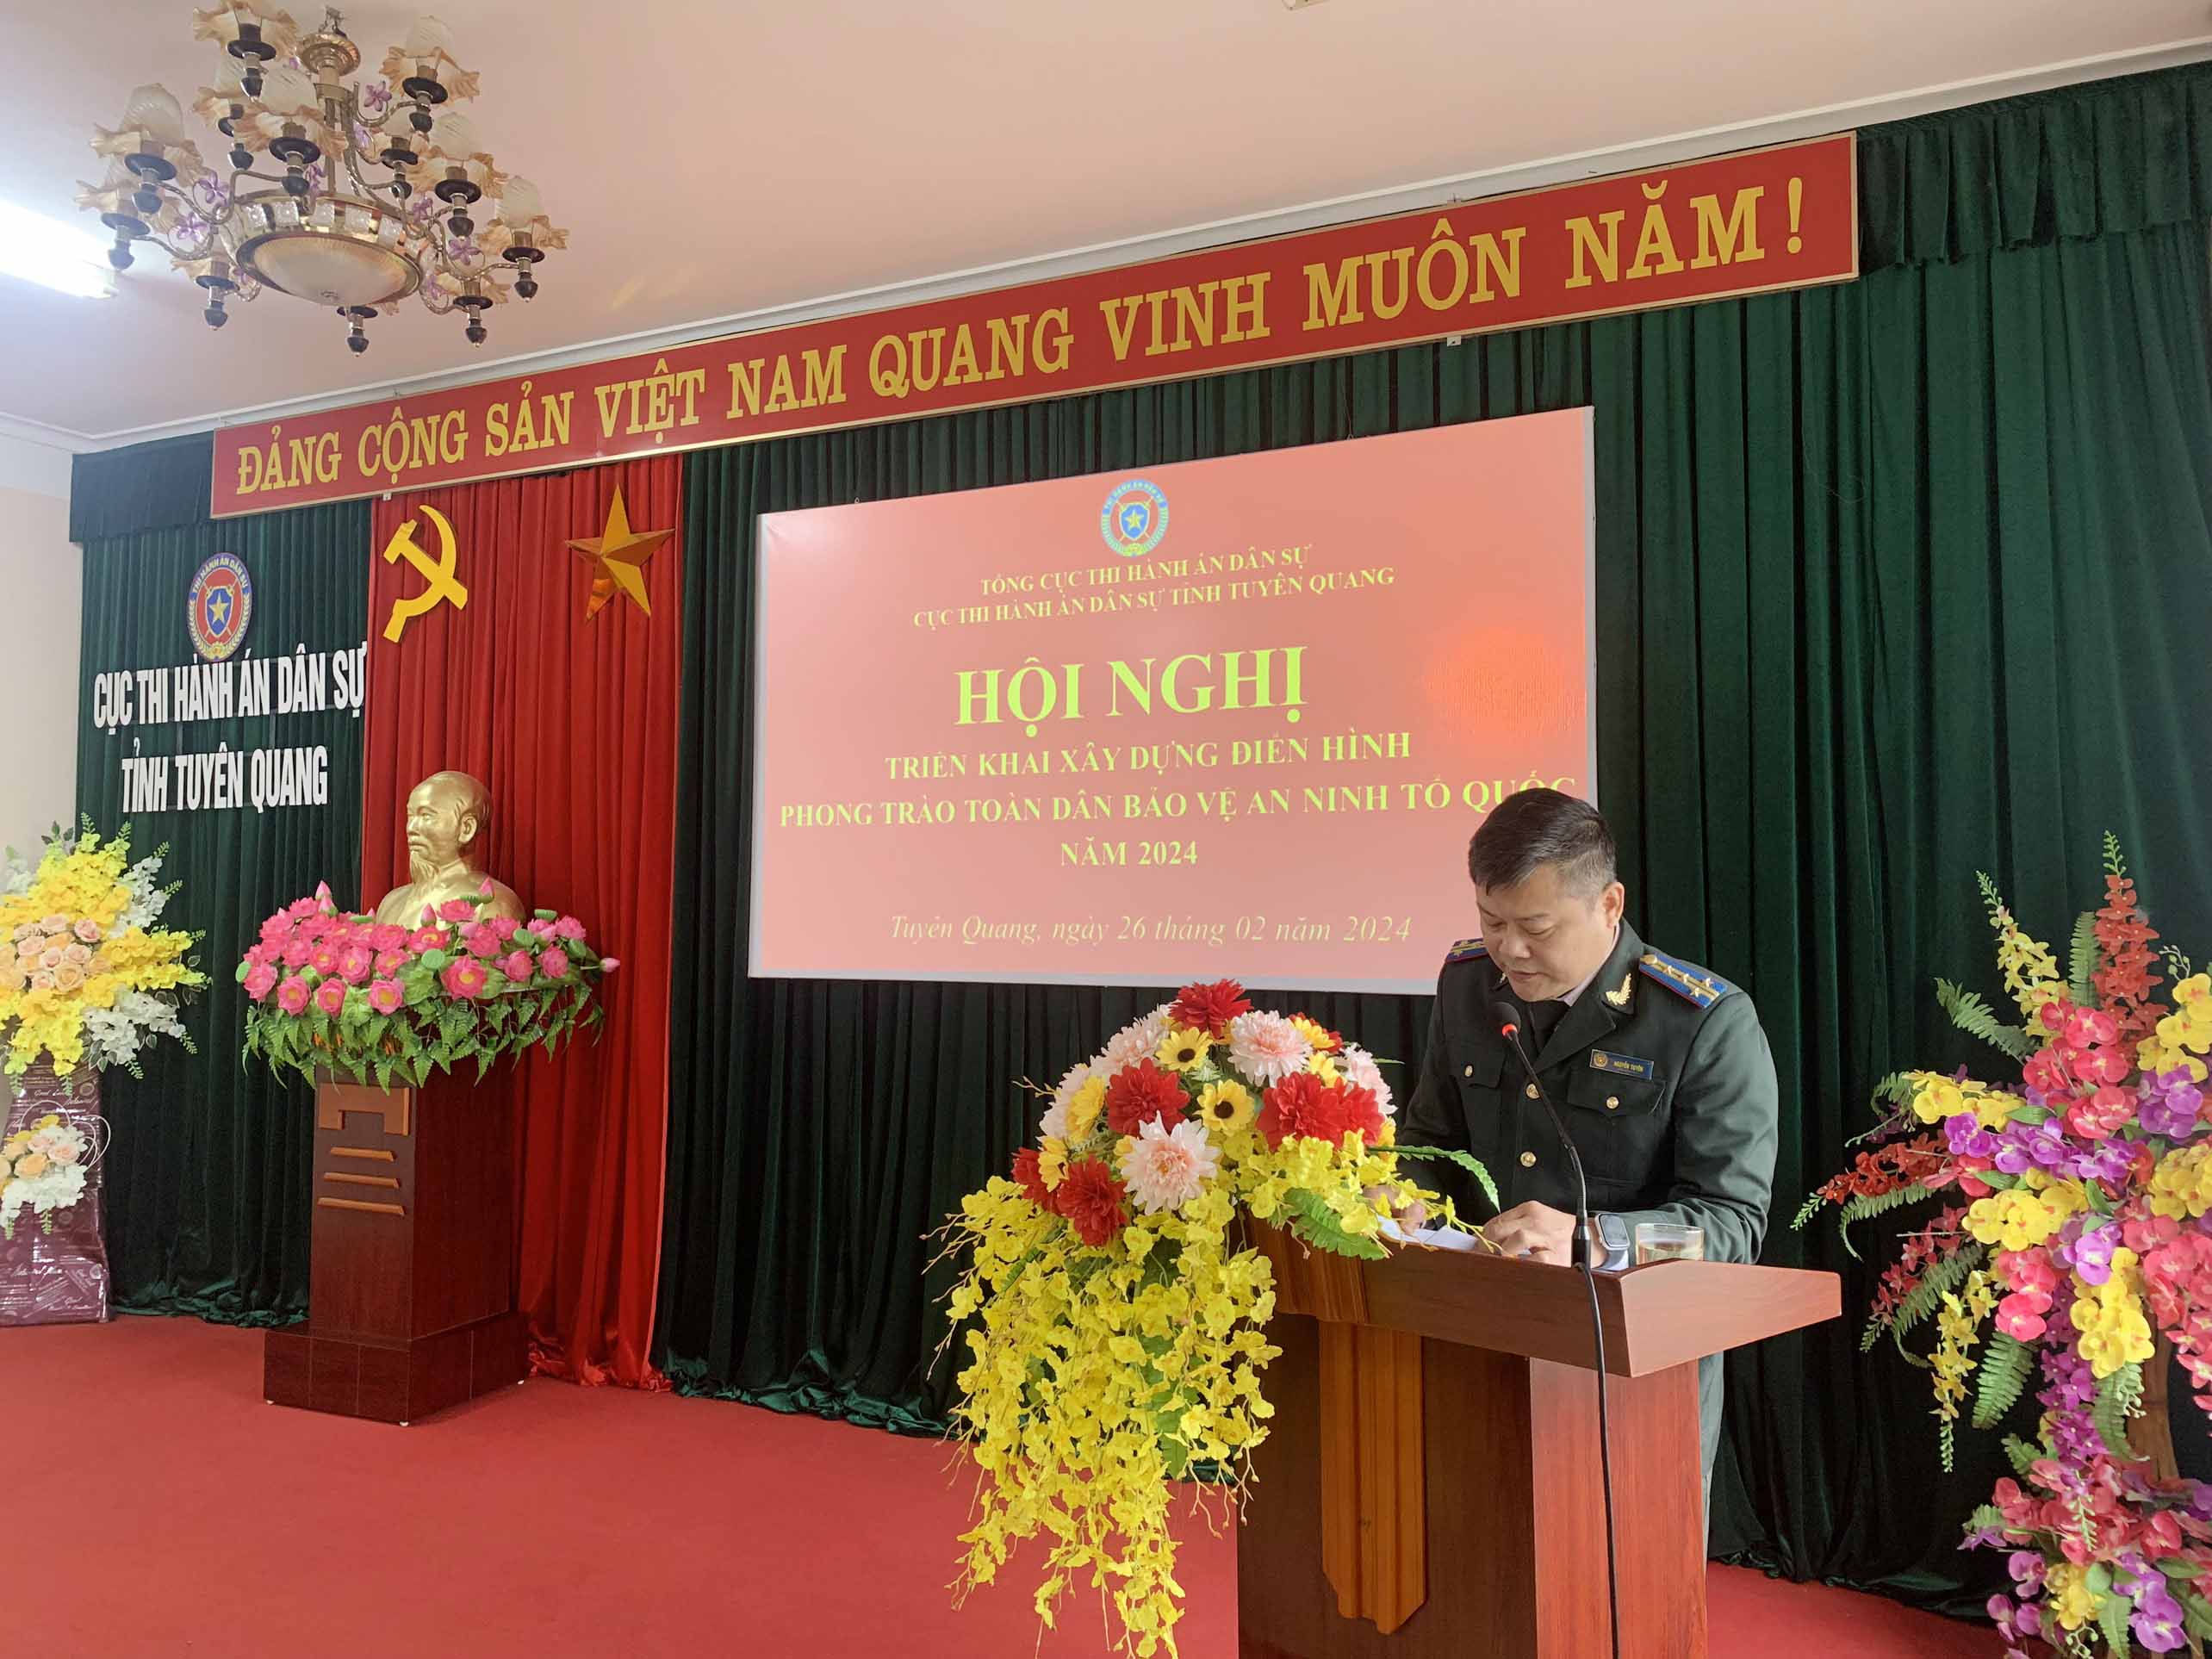 Cục THADS tỉnh Tuyên Quang tổ chức Hội nghị triển khai xây dựng  điển hình phong trào “Toàn dân bảo vệ an ninh Tổ quốc” năm 2024